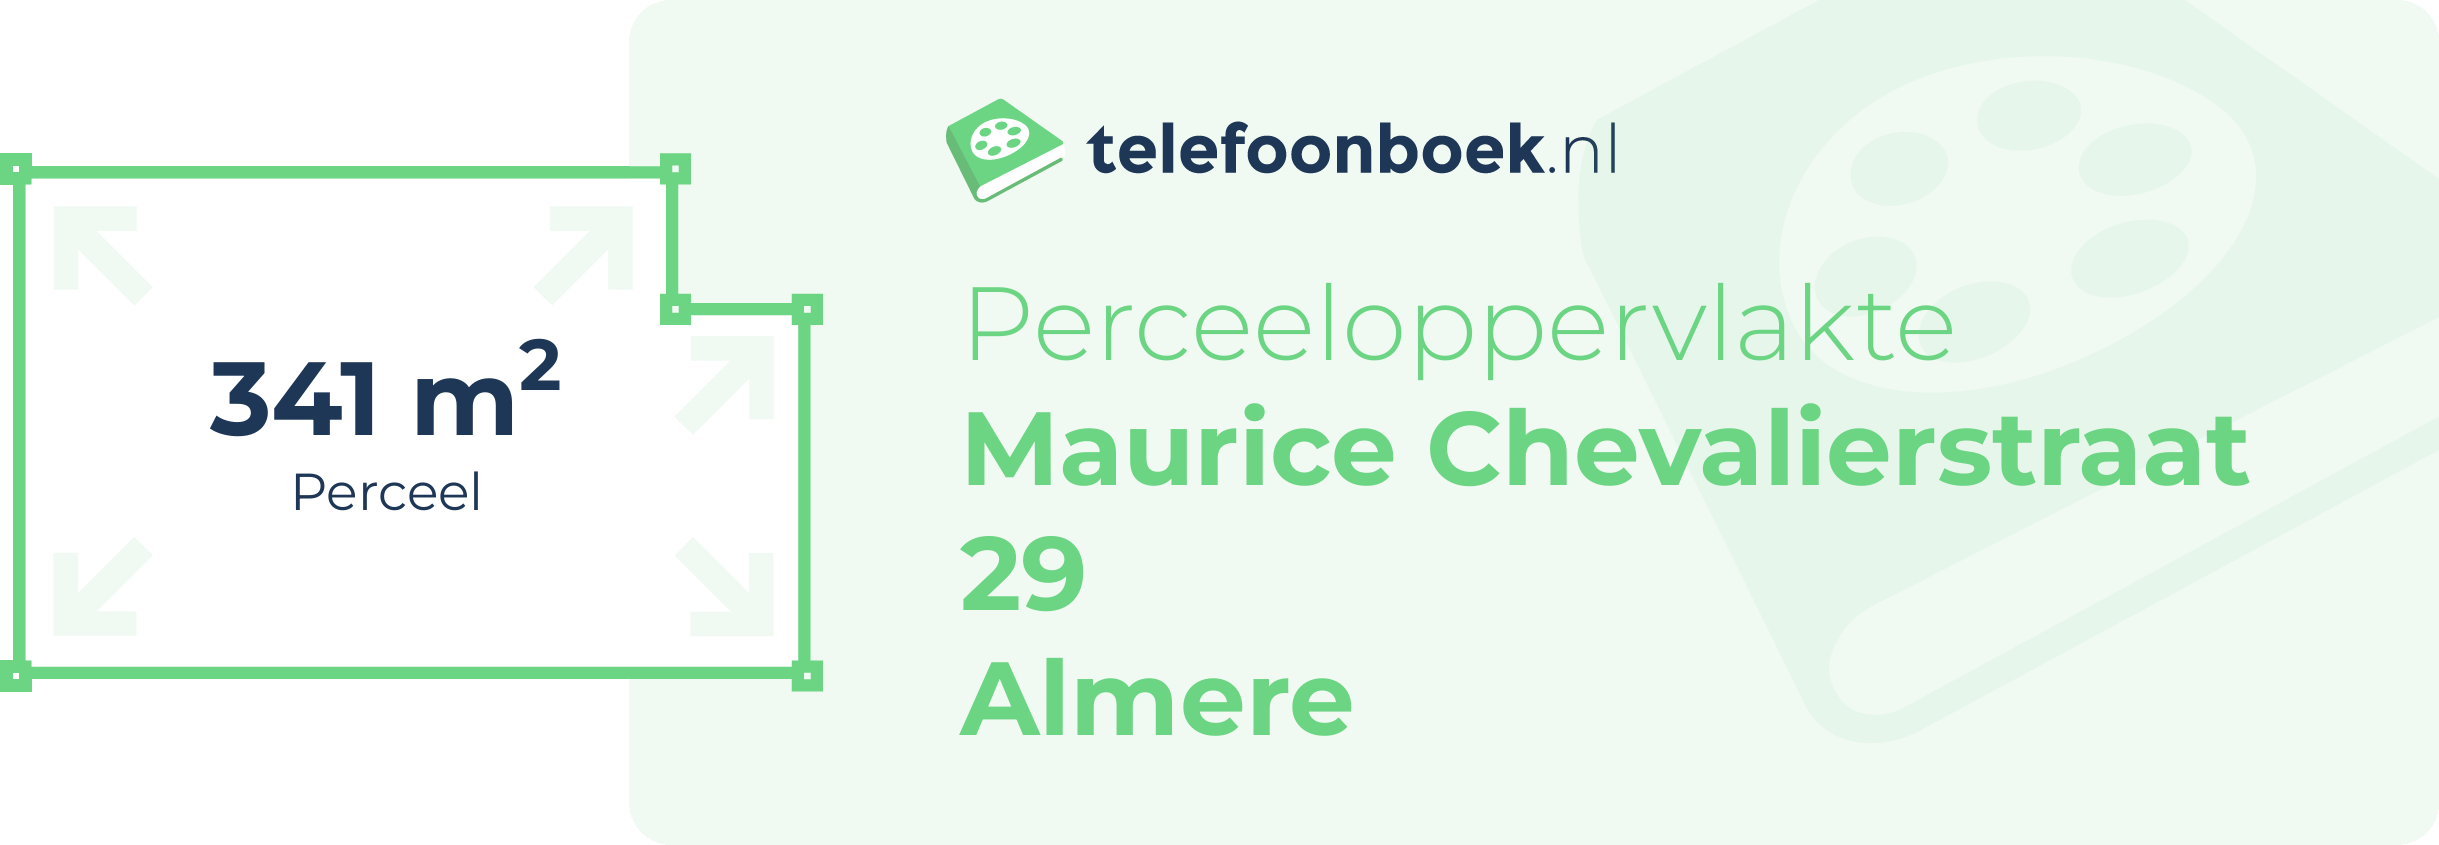 Perceeloppervlakte Maurice Chevalierstraat 29 Almere